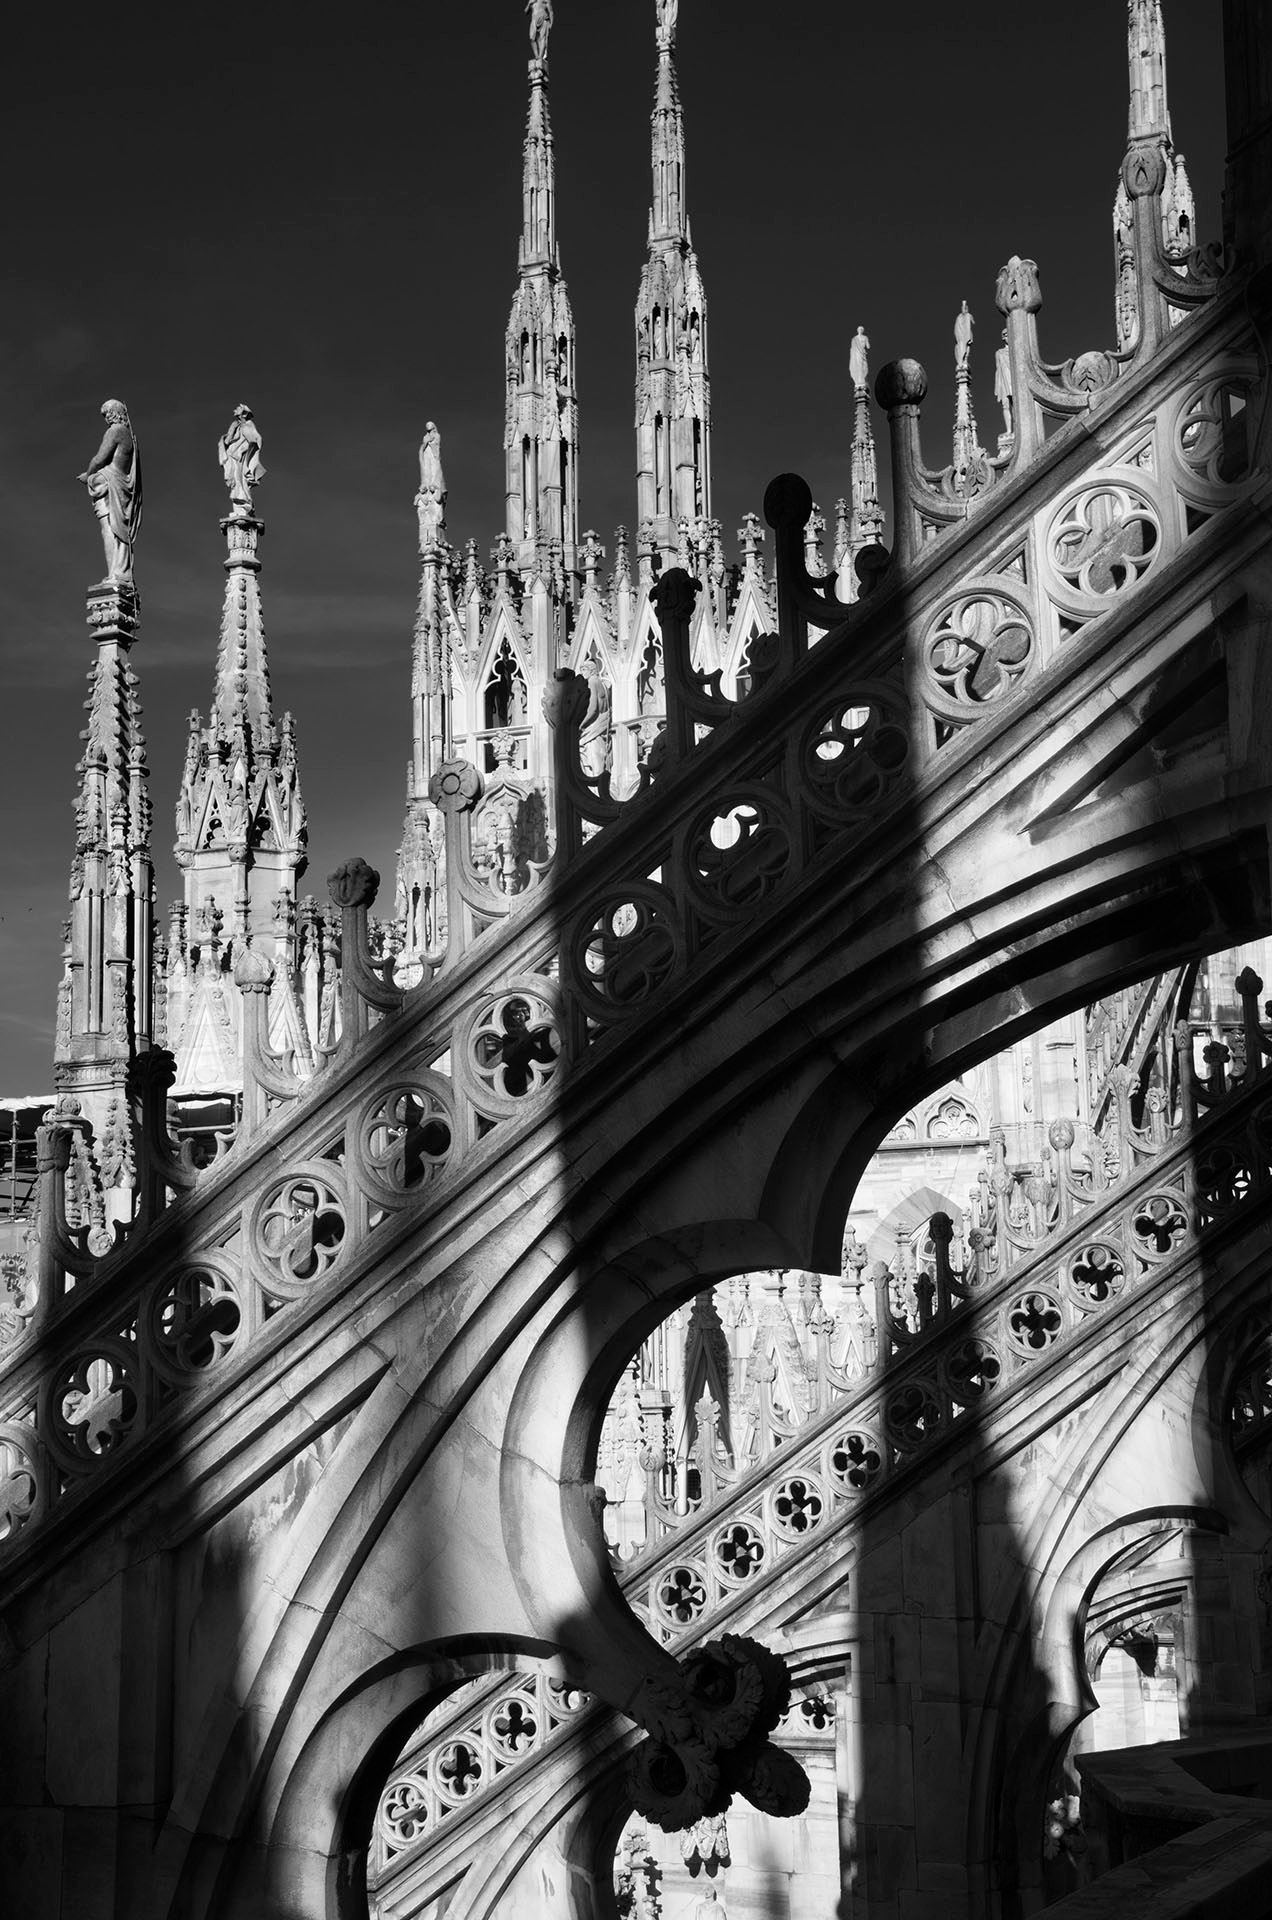 architektura, Mediolan, katedra gotycka, pinakle, maswerki, gotyk, Włochy, podróże, podróże po Europie, fotografia Monika Turska